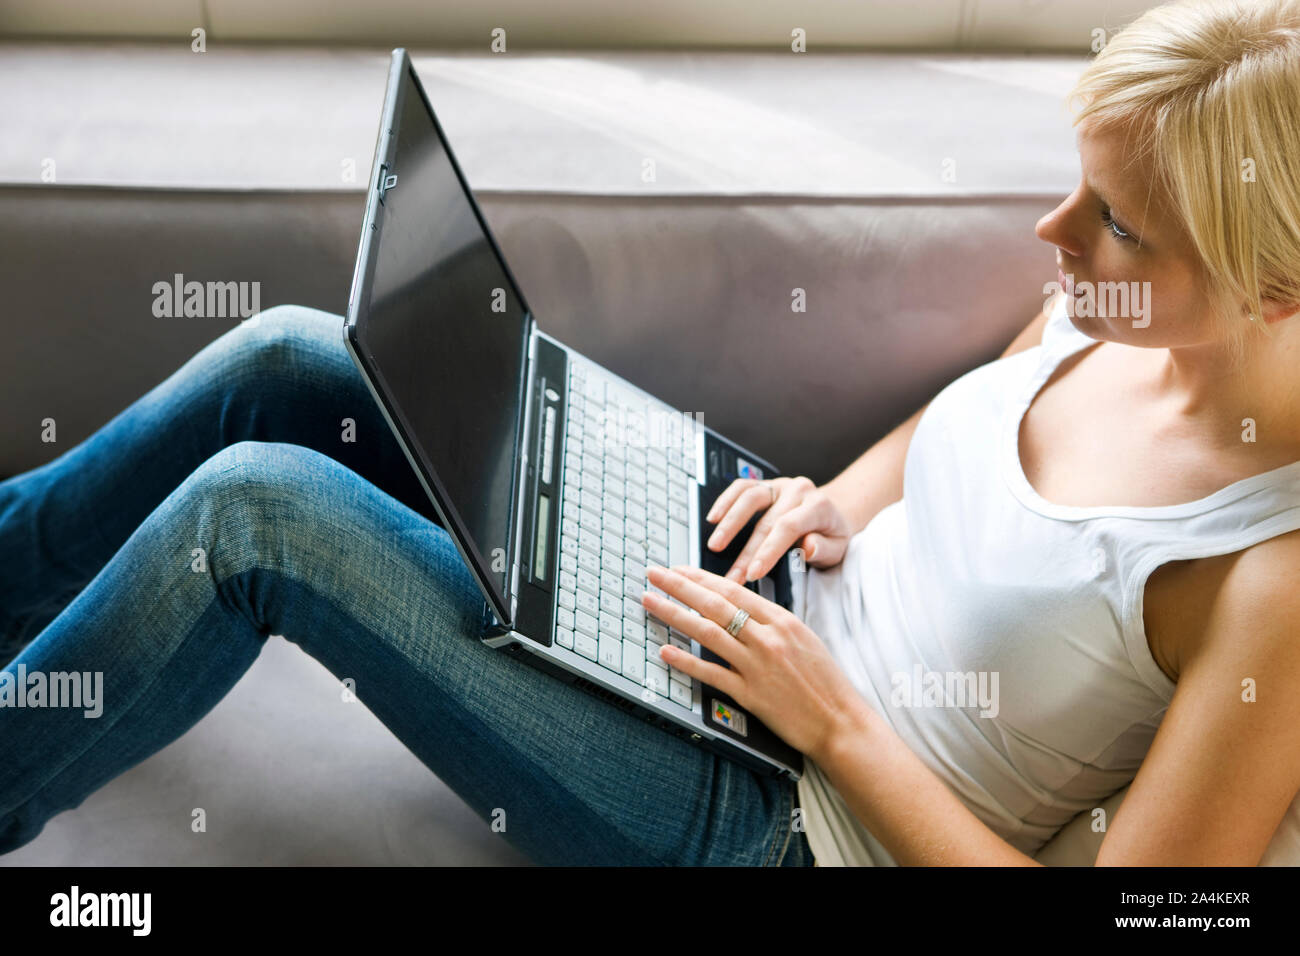 L'écriture sur un ordinateur portable - internet - chatting Banque D'Images